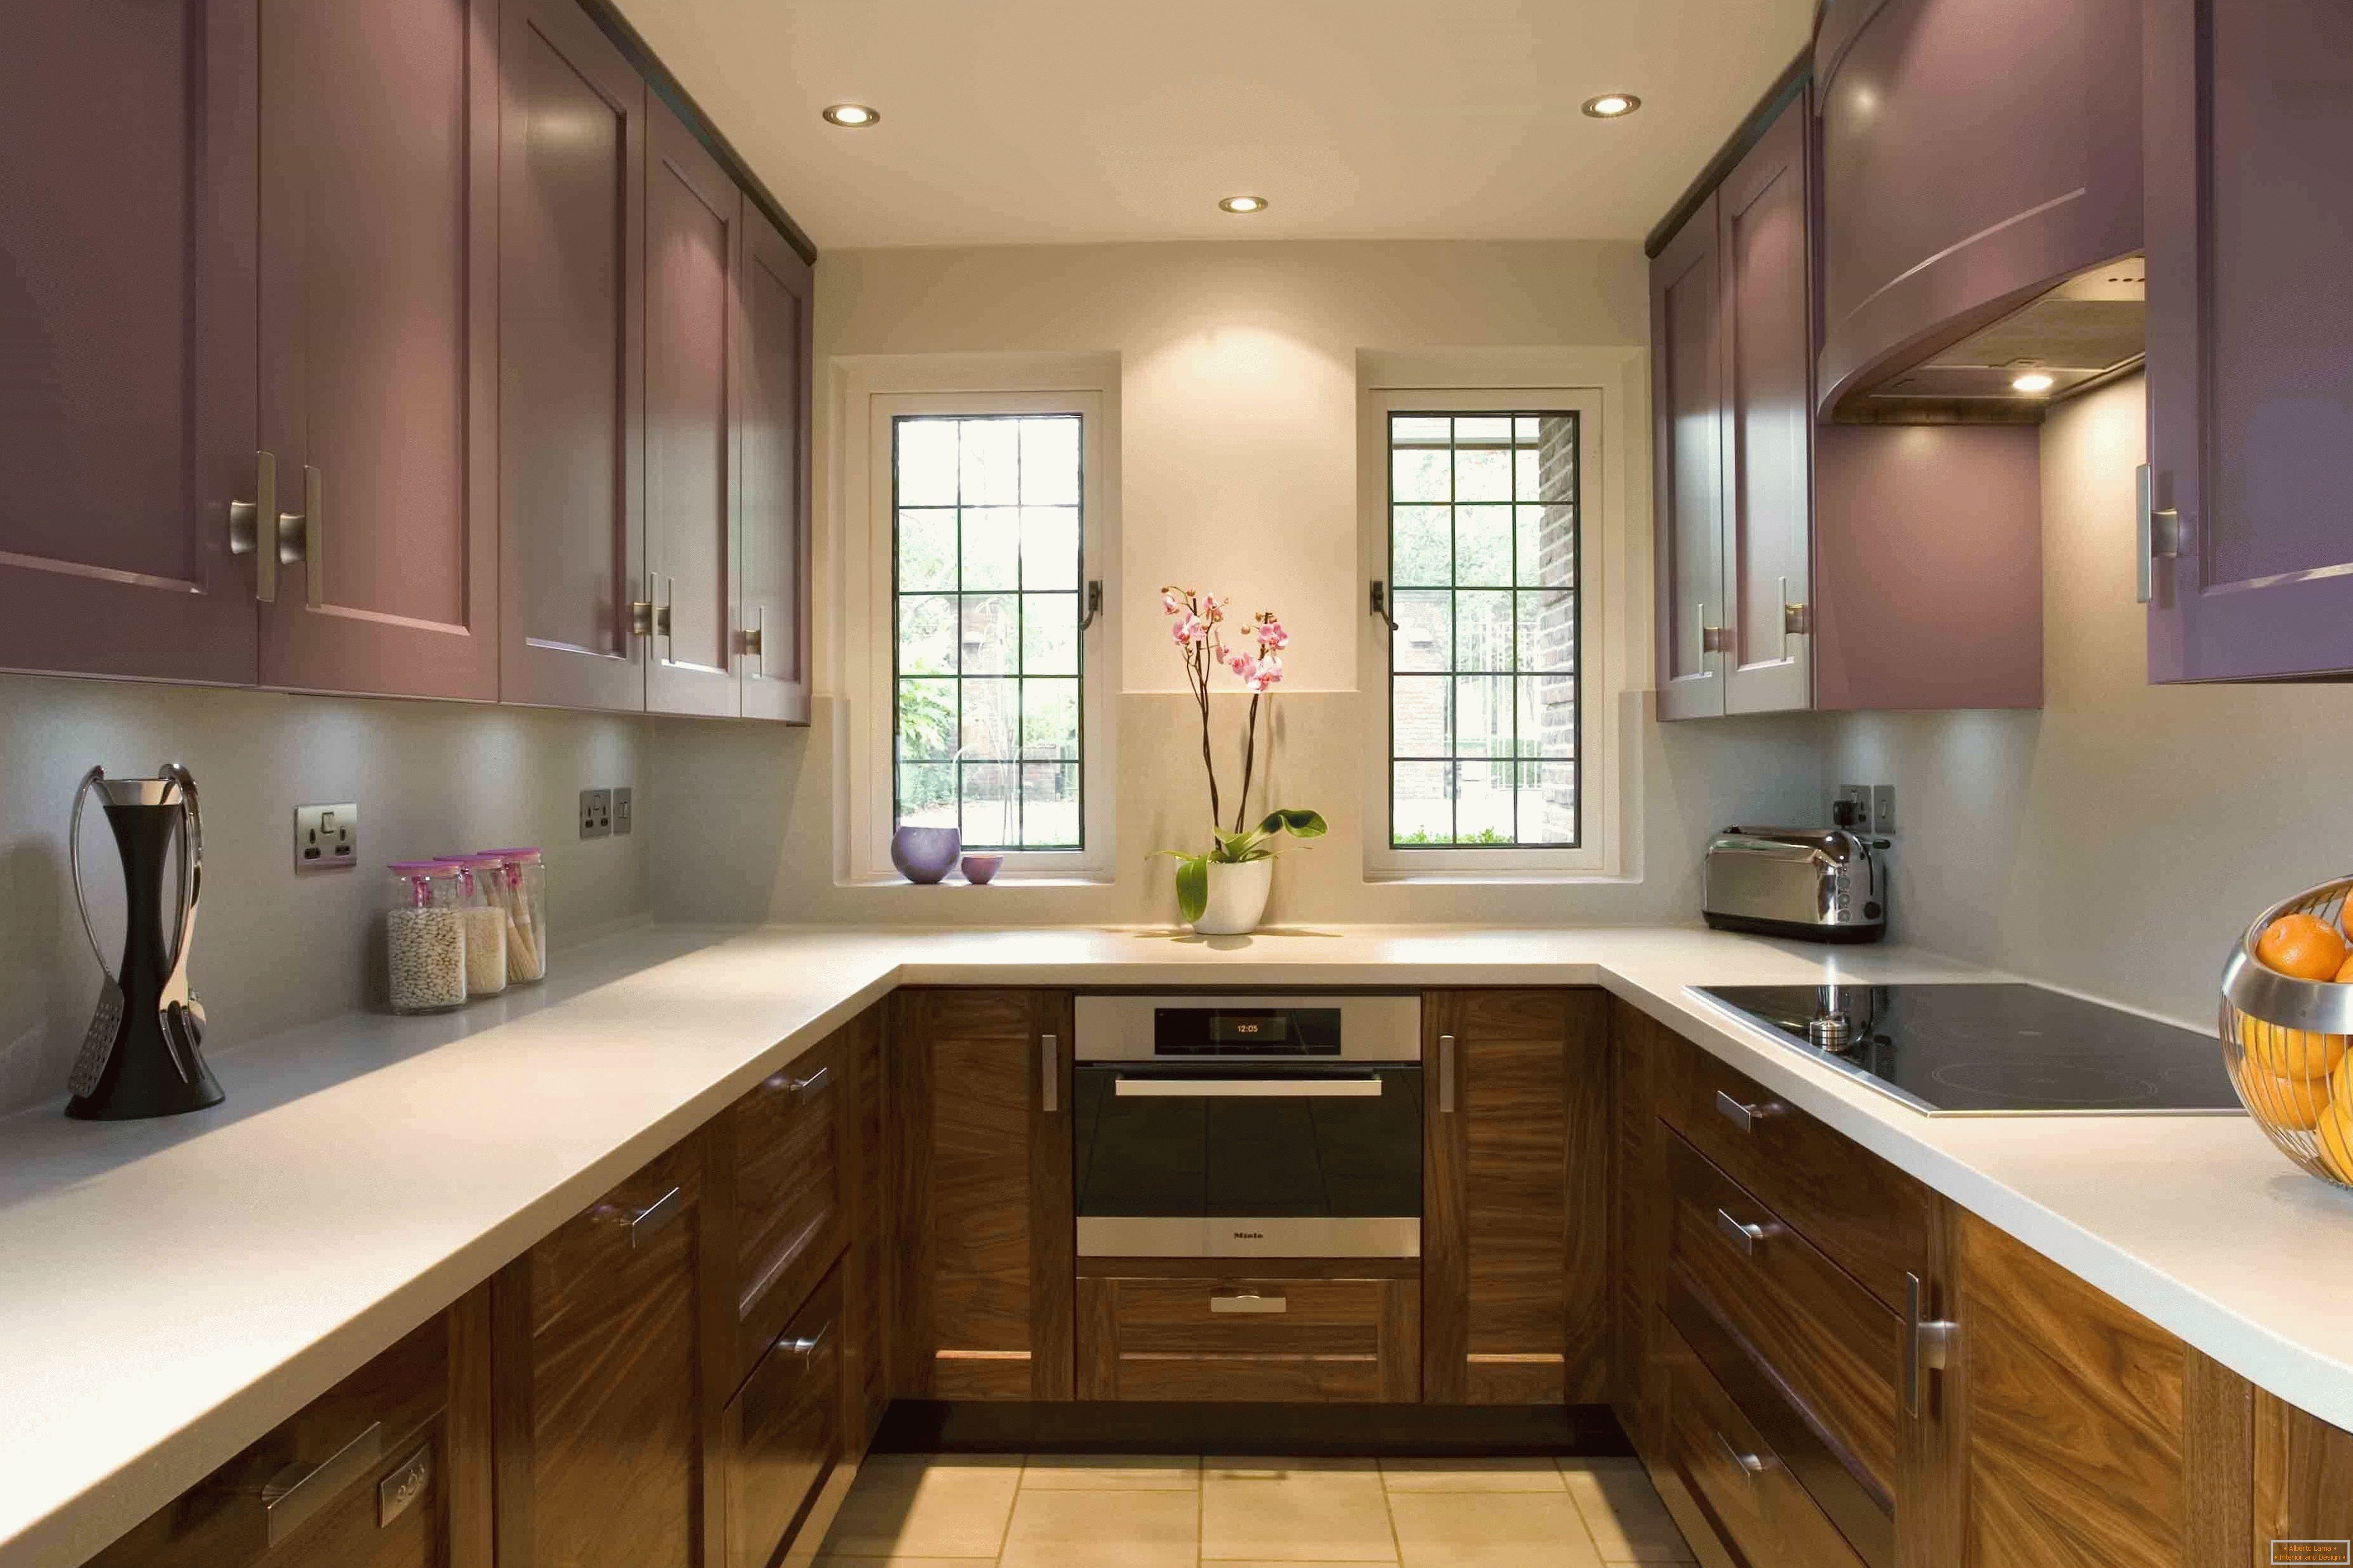 Cozinha em forma de U em lilás em combinação com madeira